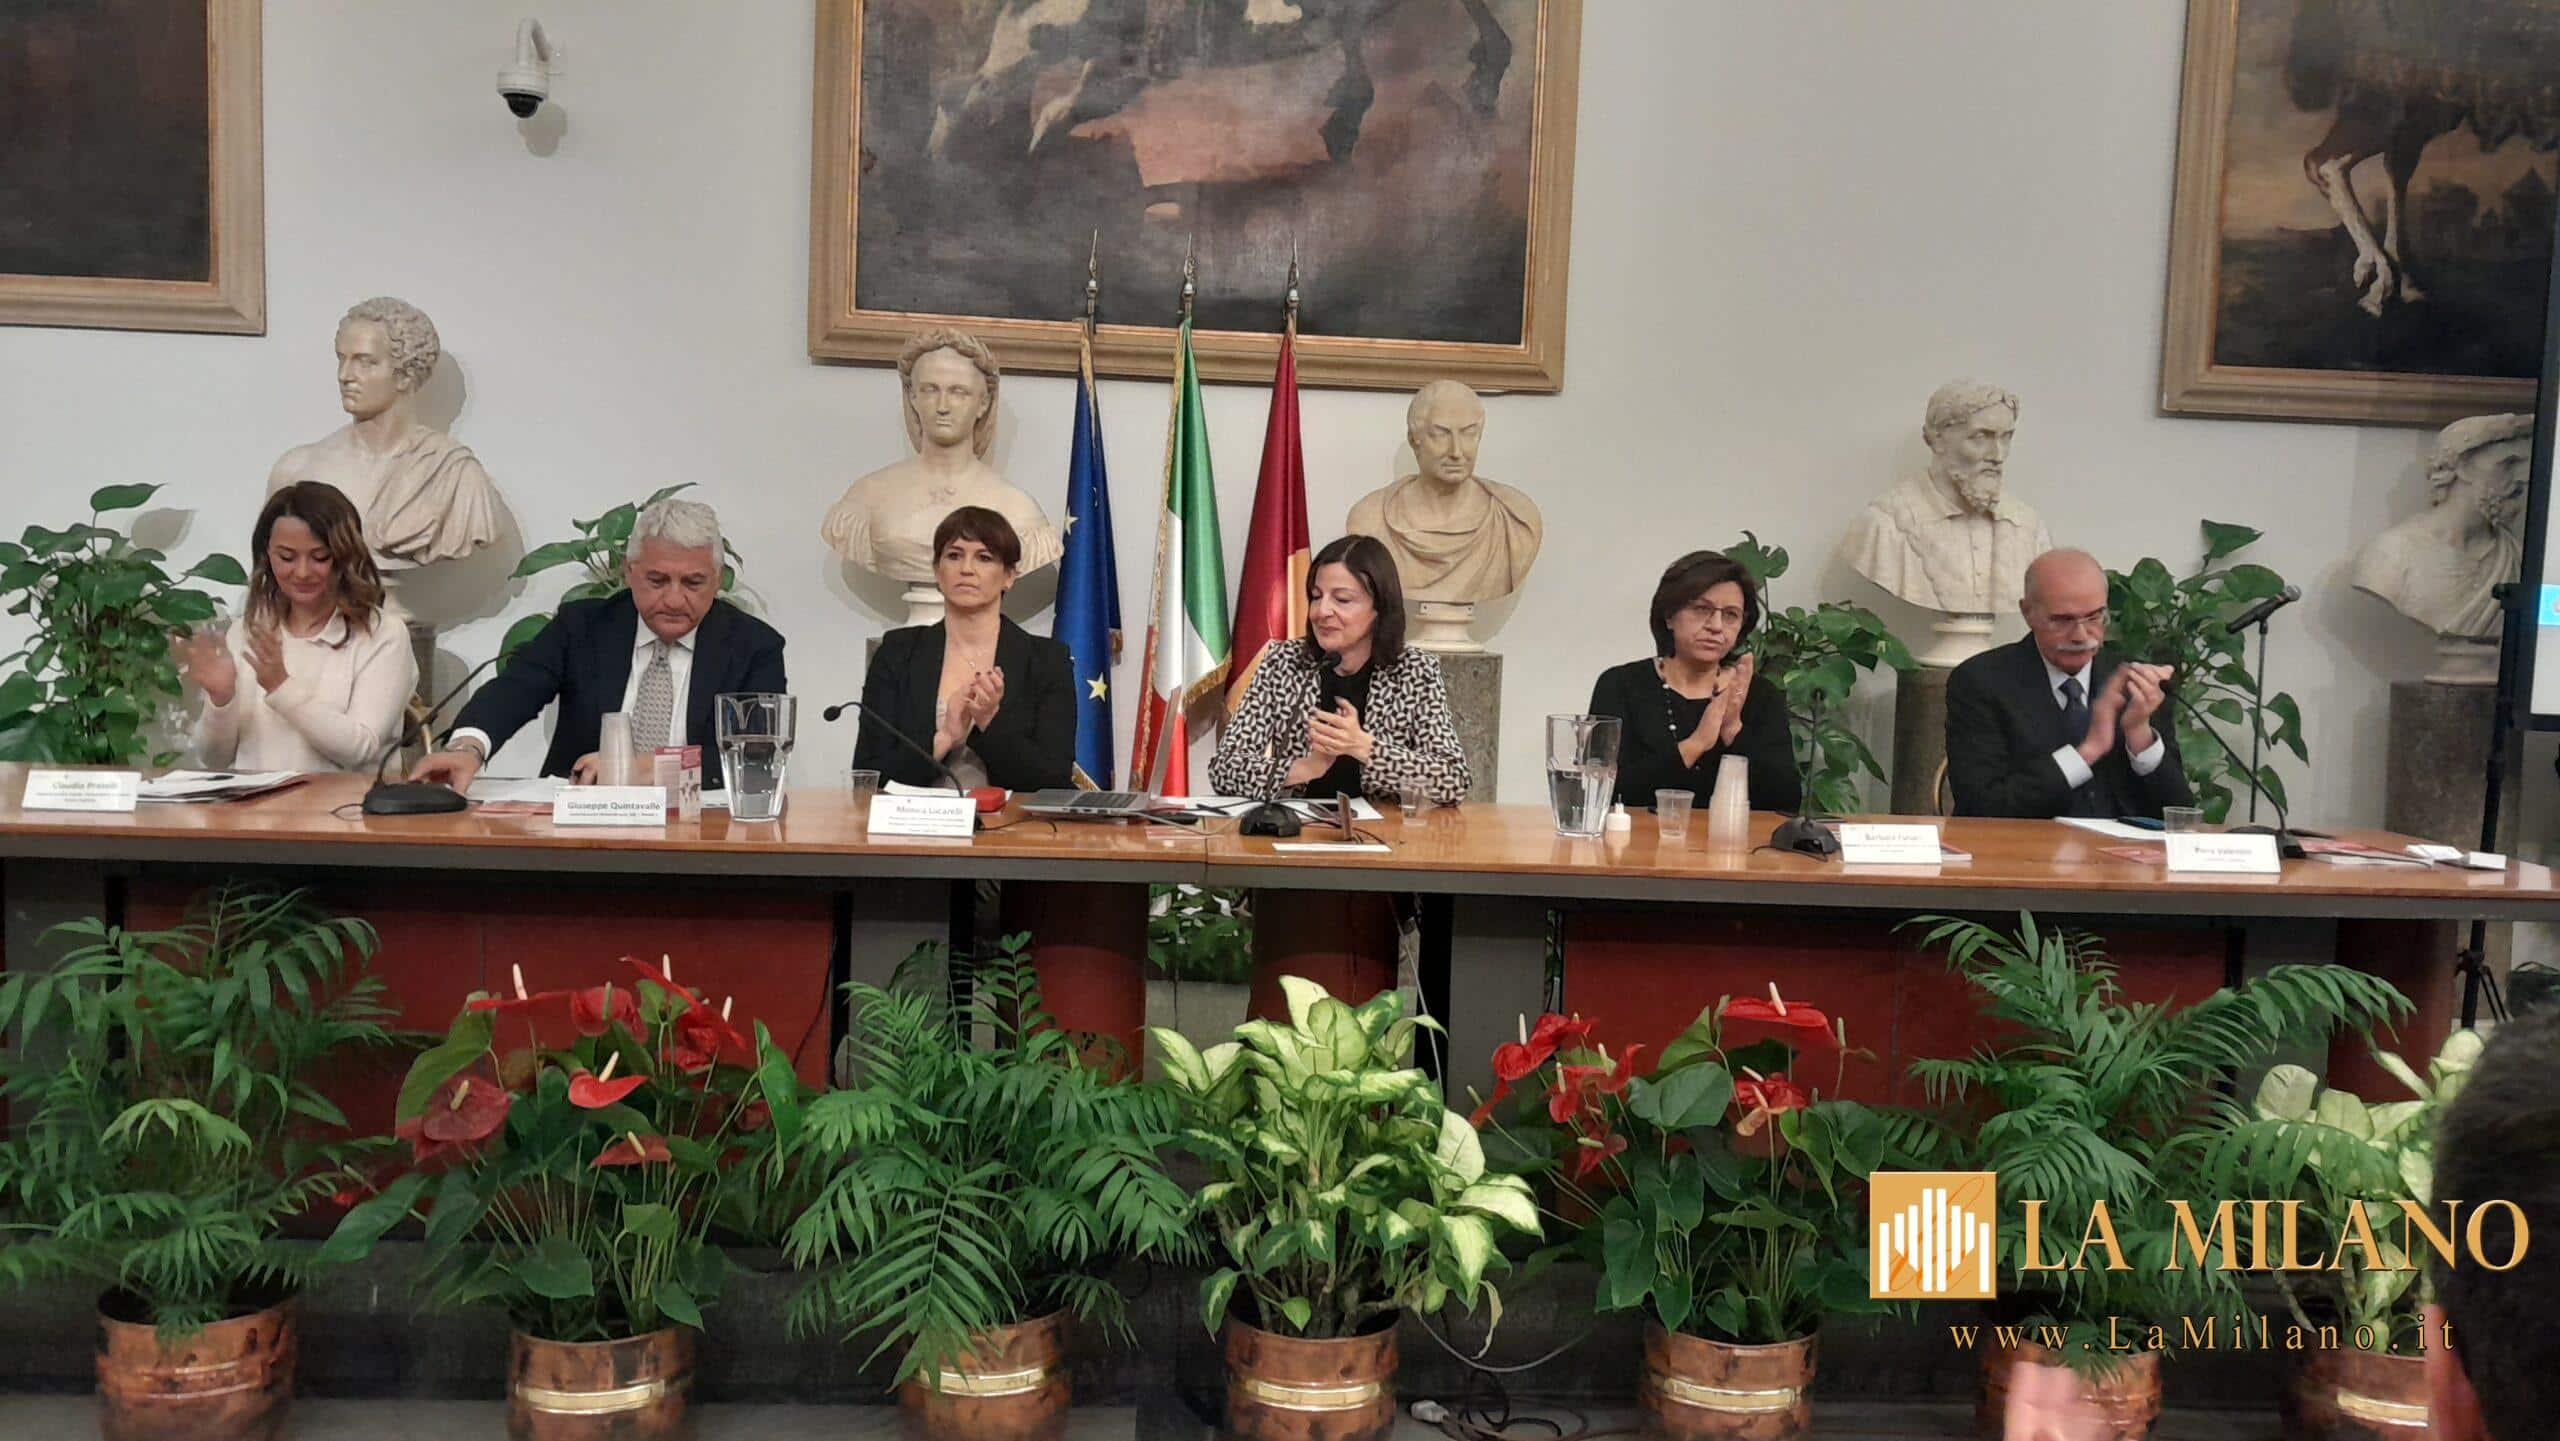 Roma, giornata internazionale contro le mutilazioni genitali femminili, un incontro formativo per rafforzare la consapevolezza